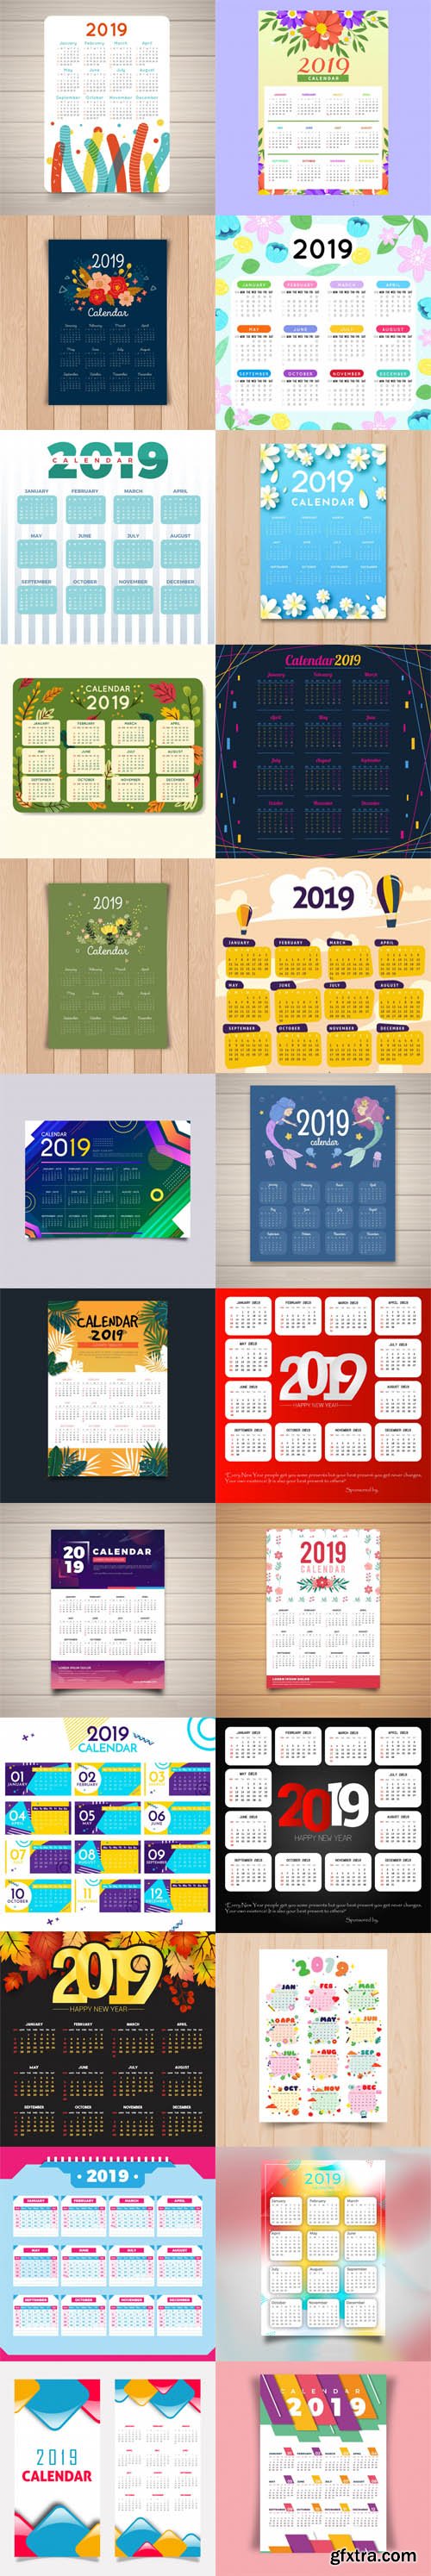 2019 Calendar Vector Templates Collection 3 [30 Calendar]